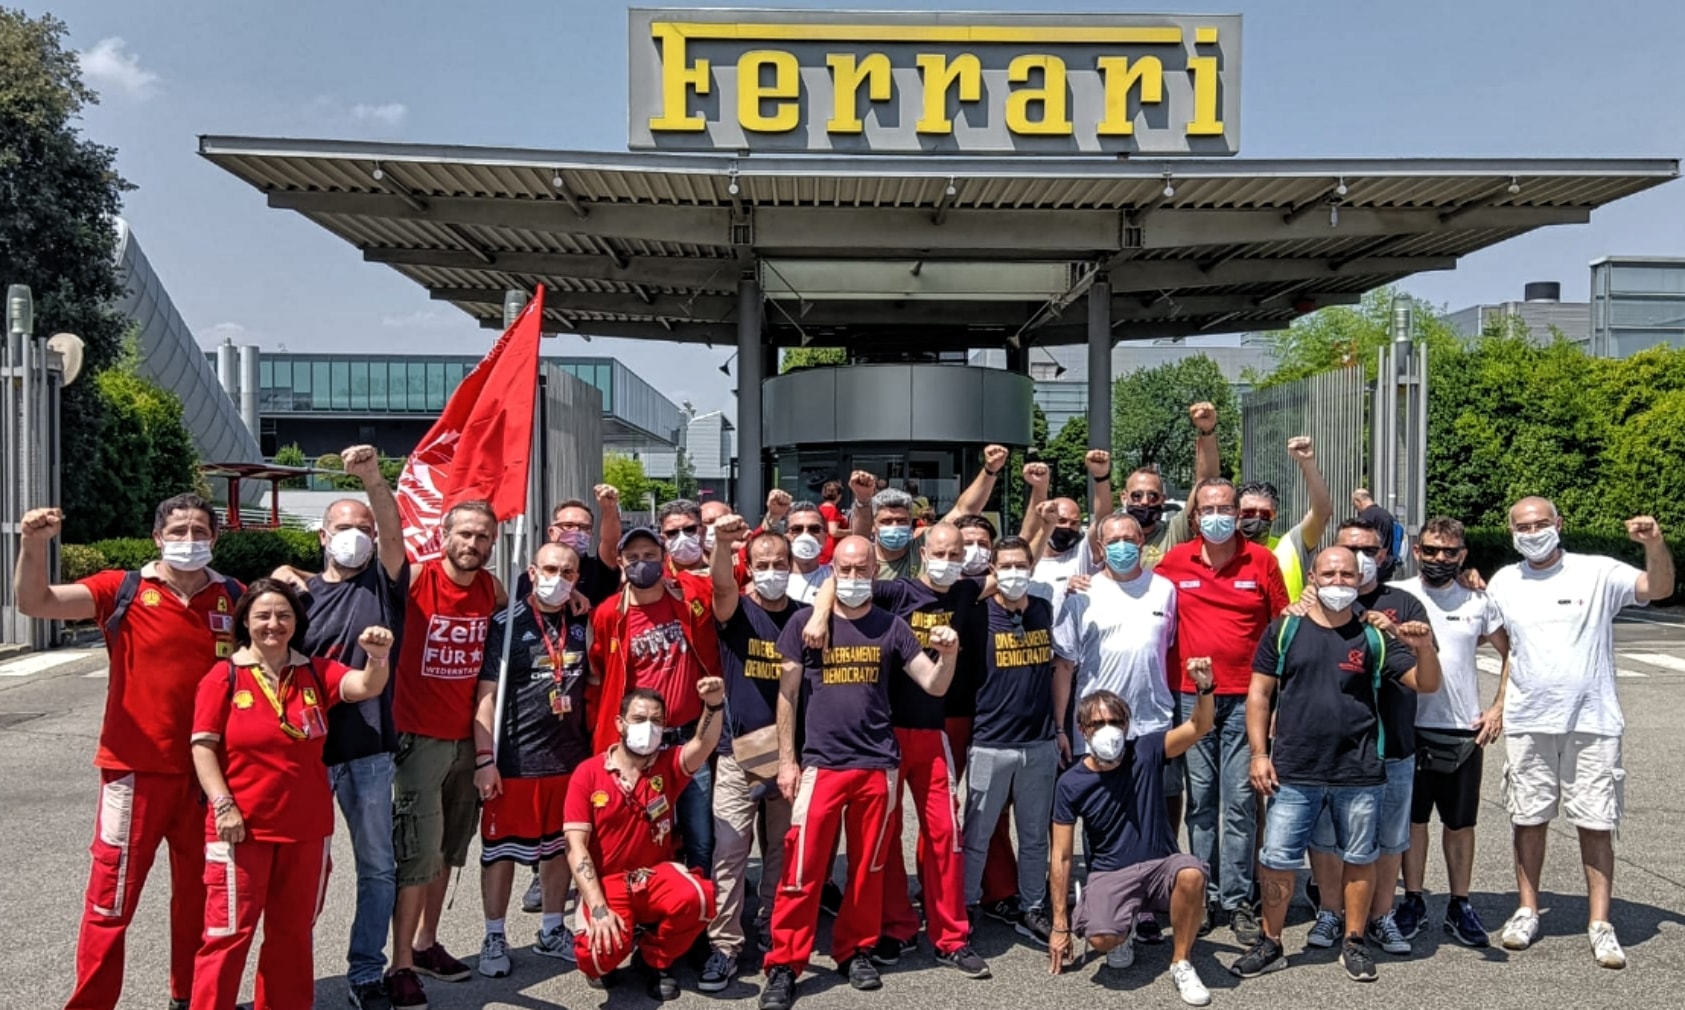 L’incontro tra i lavoratori della Ferrari e i lavoratori della GKN.